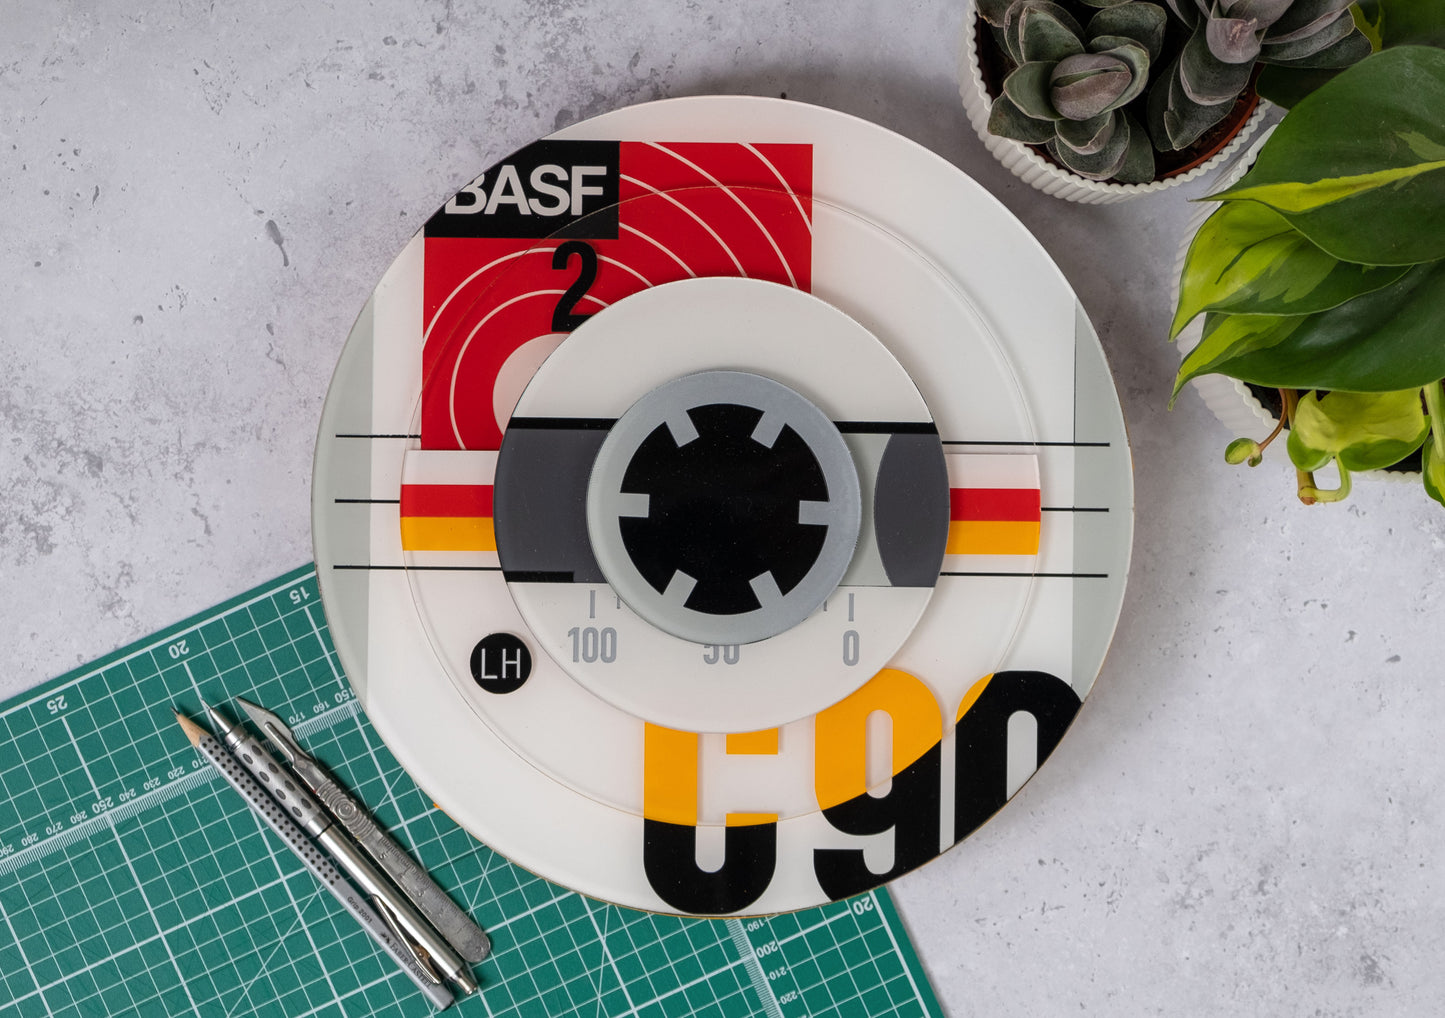 BASF Cassette Roundel